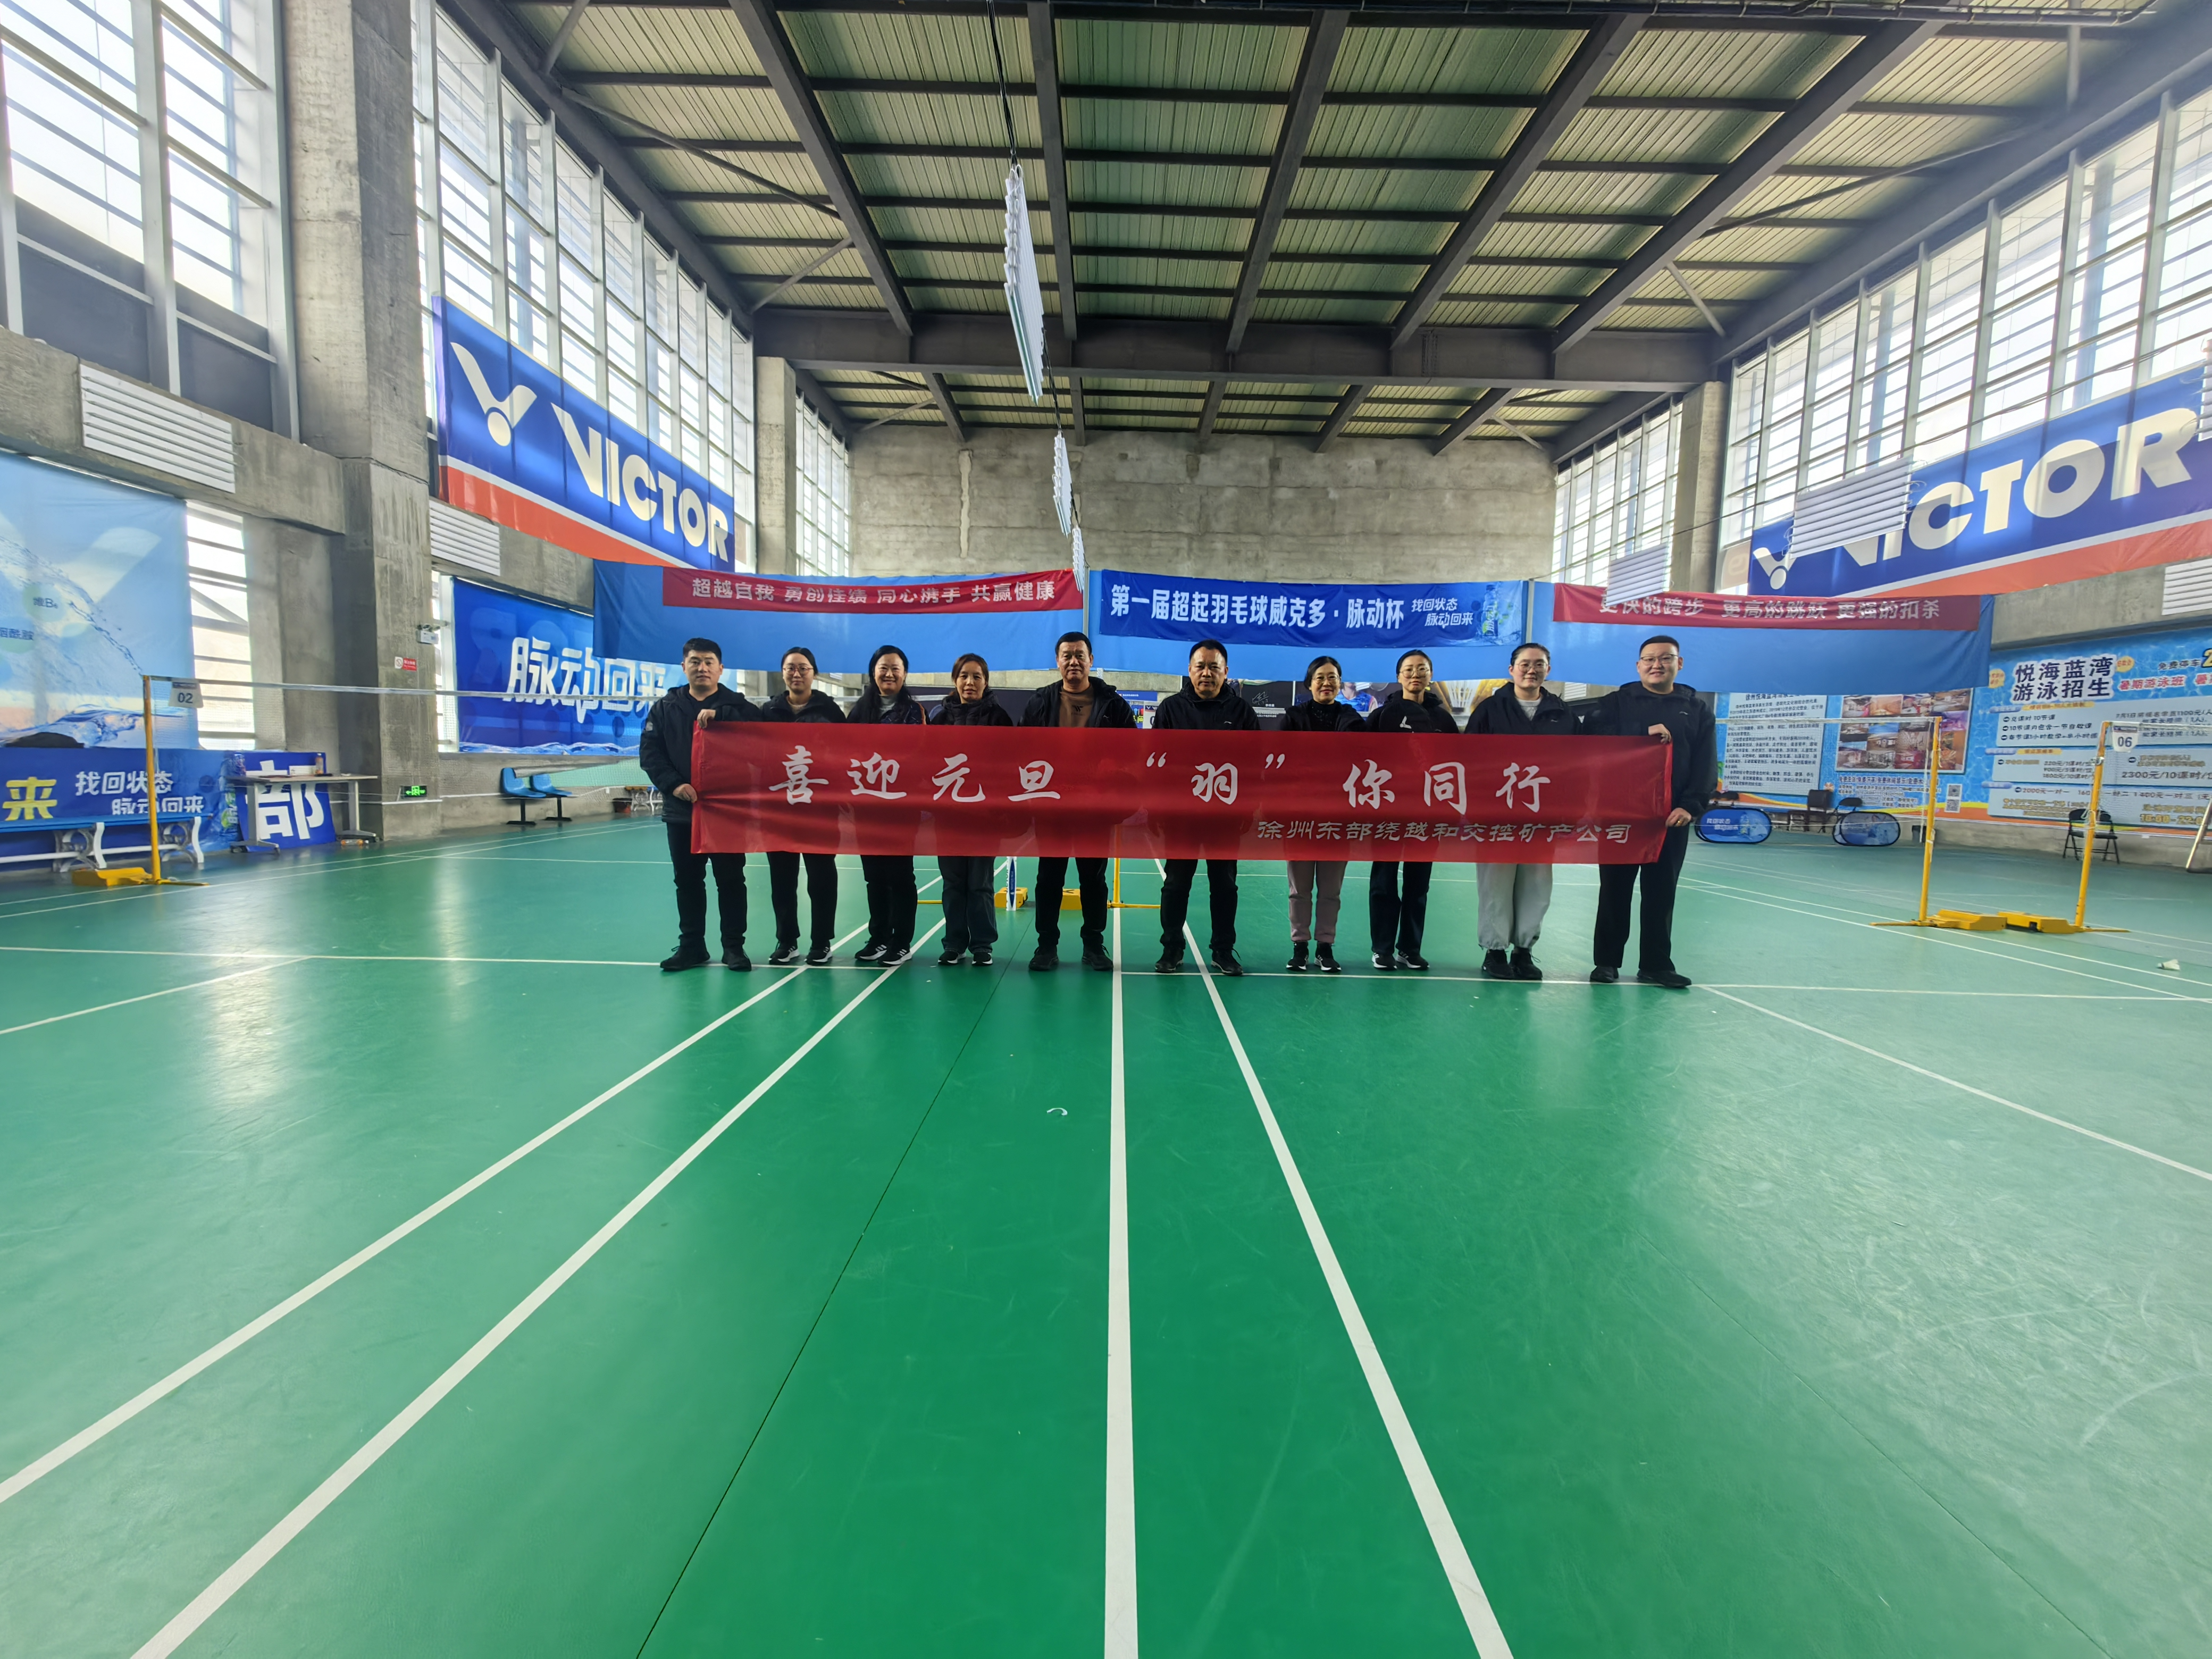 徐州东部绕越和yp街机矿产公司工会组织开展职工羽毛球竞赛运动